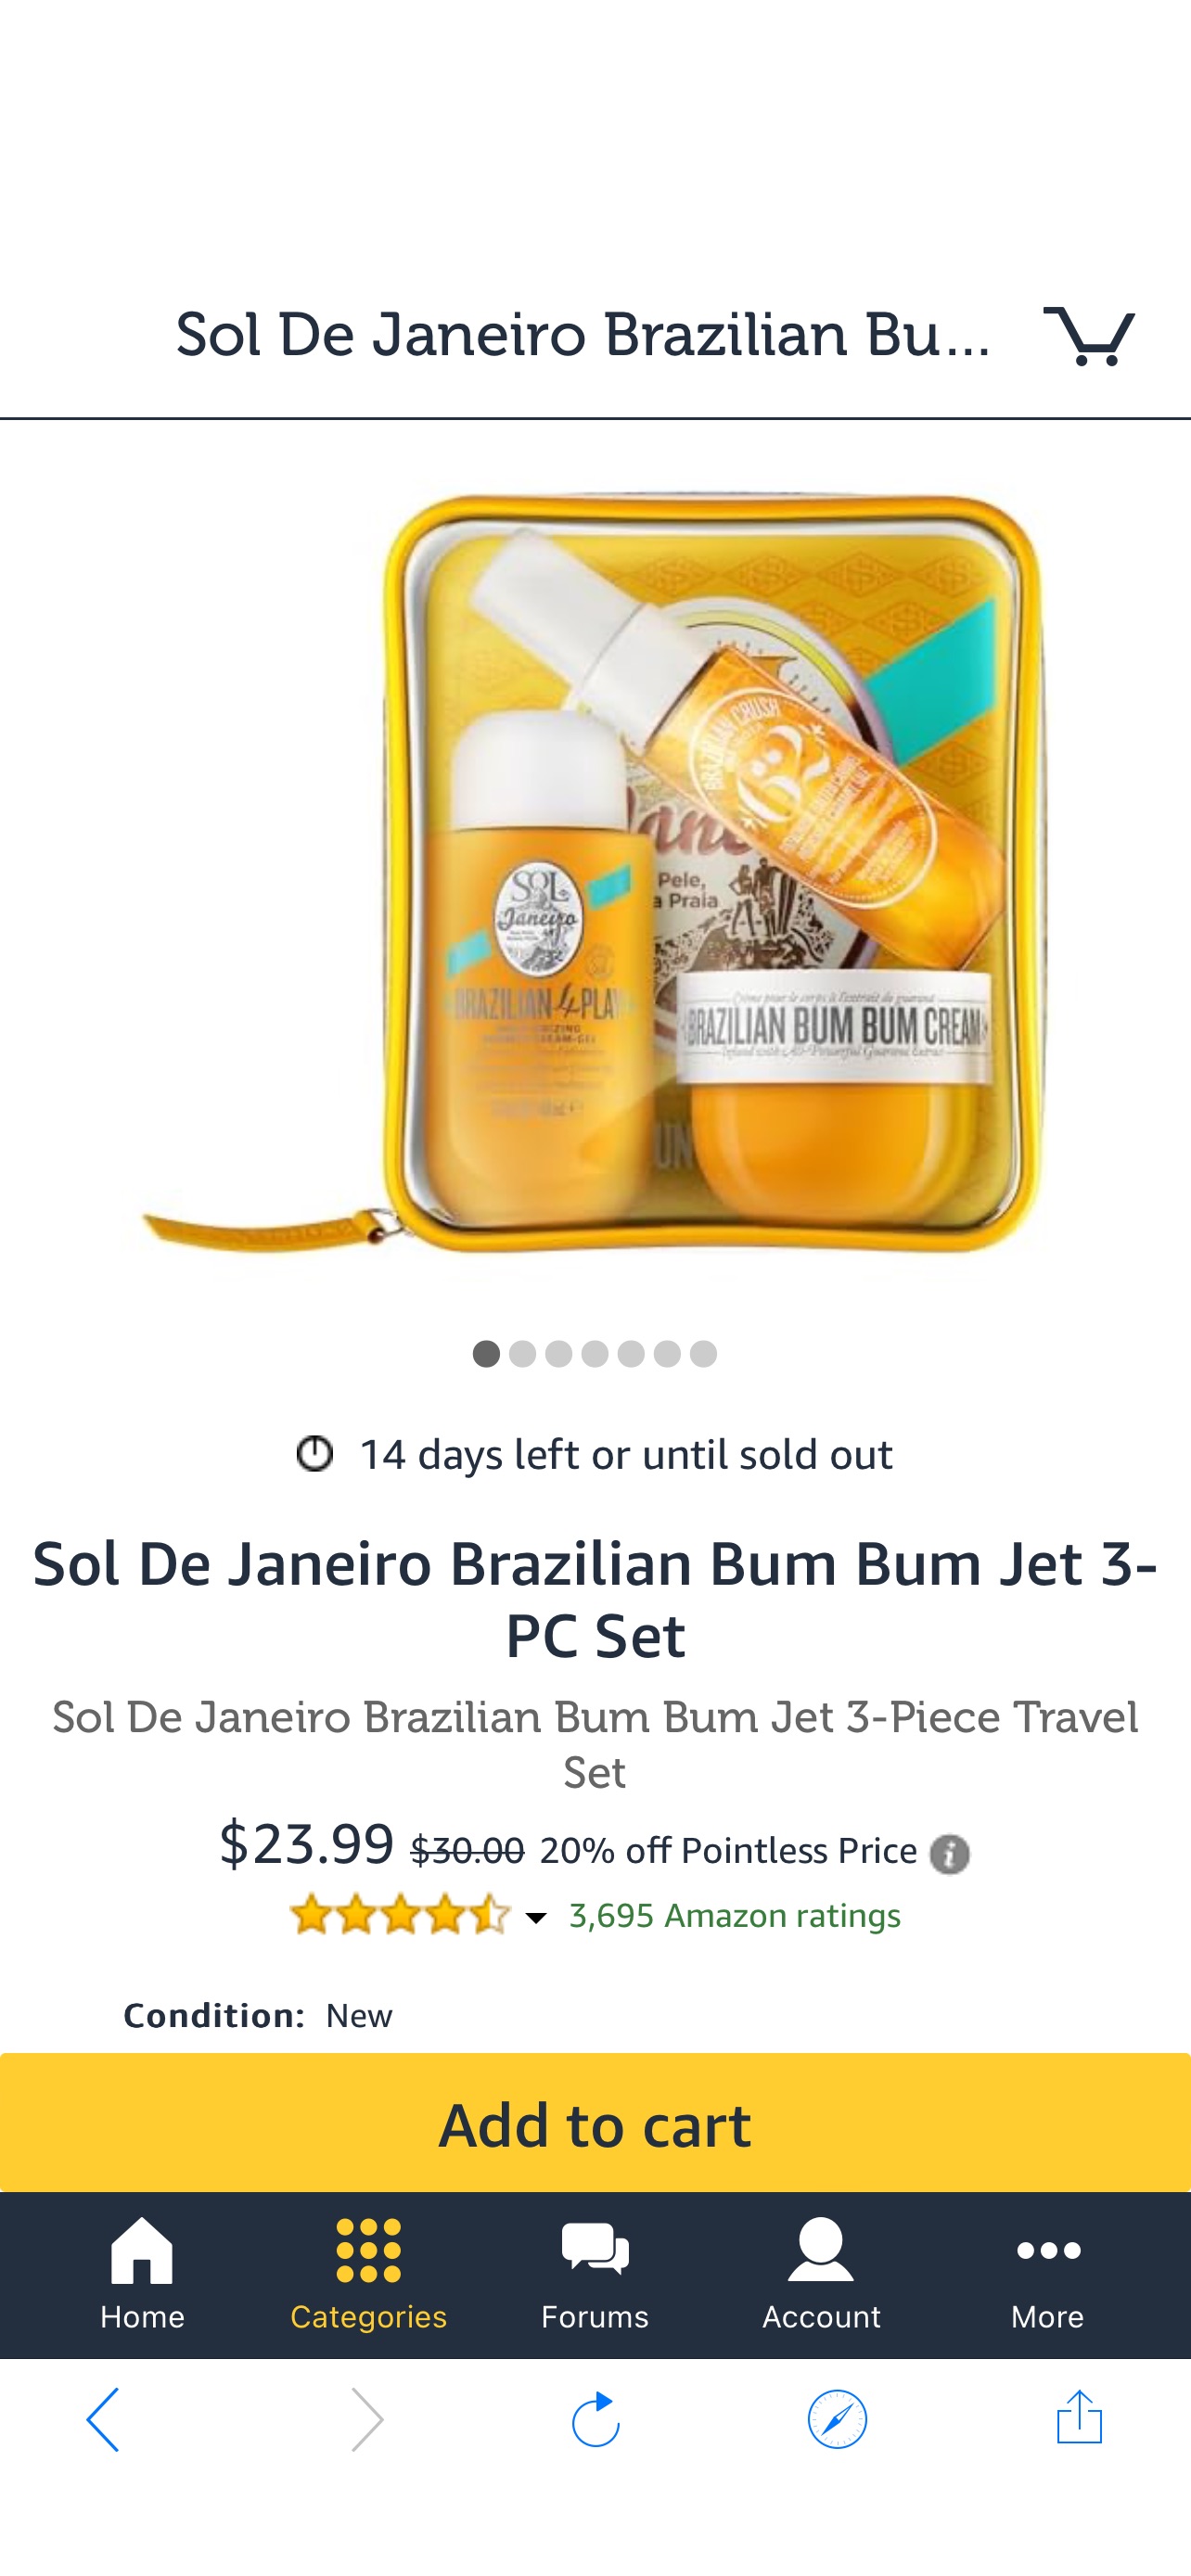 护肤套装Sol De Janeiro Brazilian Bum Bum Jet 3-PC Set